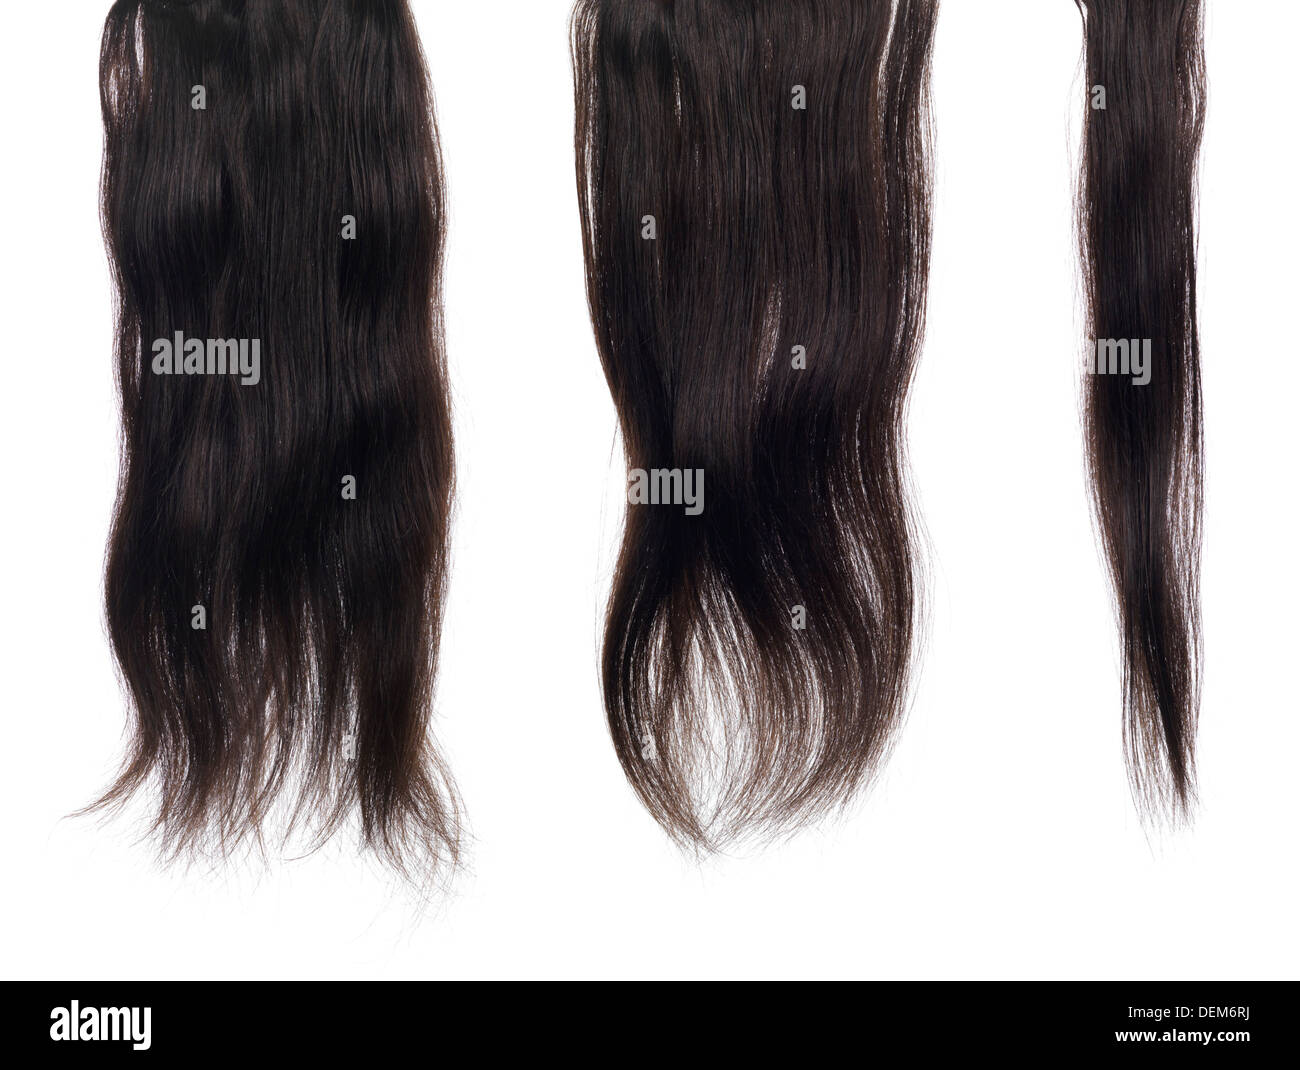 Trefoli, serrature di color marrone scuro le estensioni di capelli con capelli veri texture isolato su sfondo bianco Foto Stock